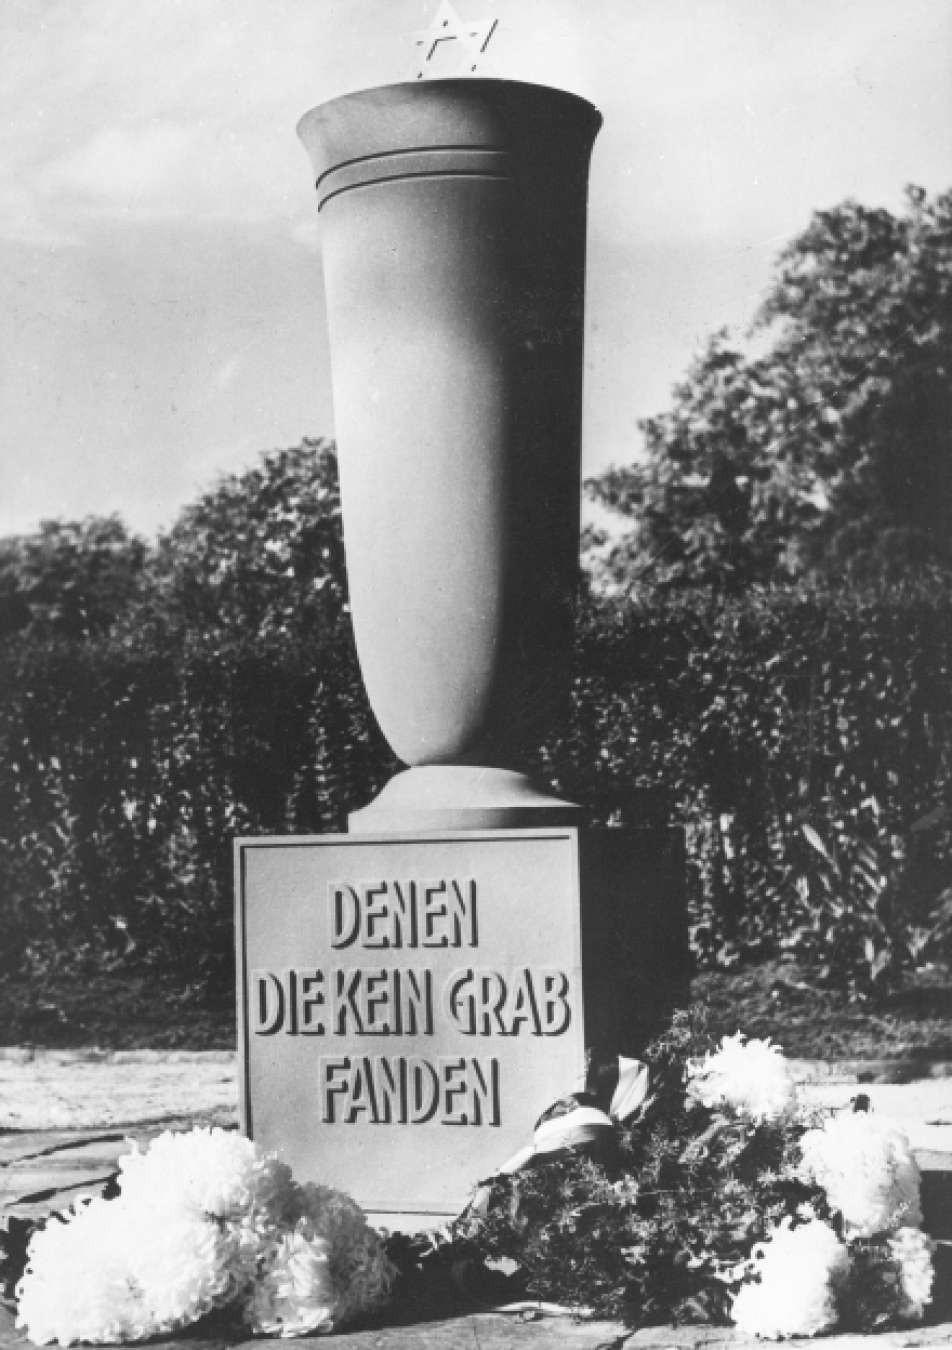 schwarz-weiß Fotografie eines Denkmals für Juden mit der Aufschrift "denen die kein Grab fanden"